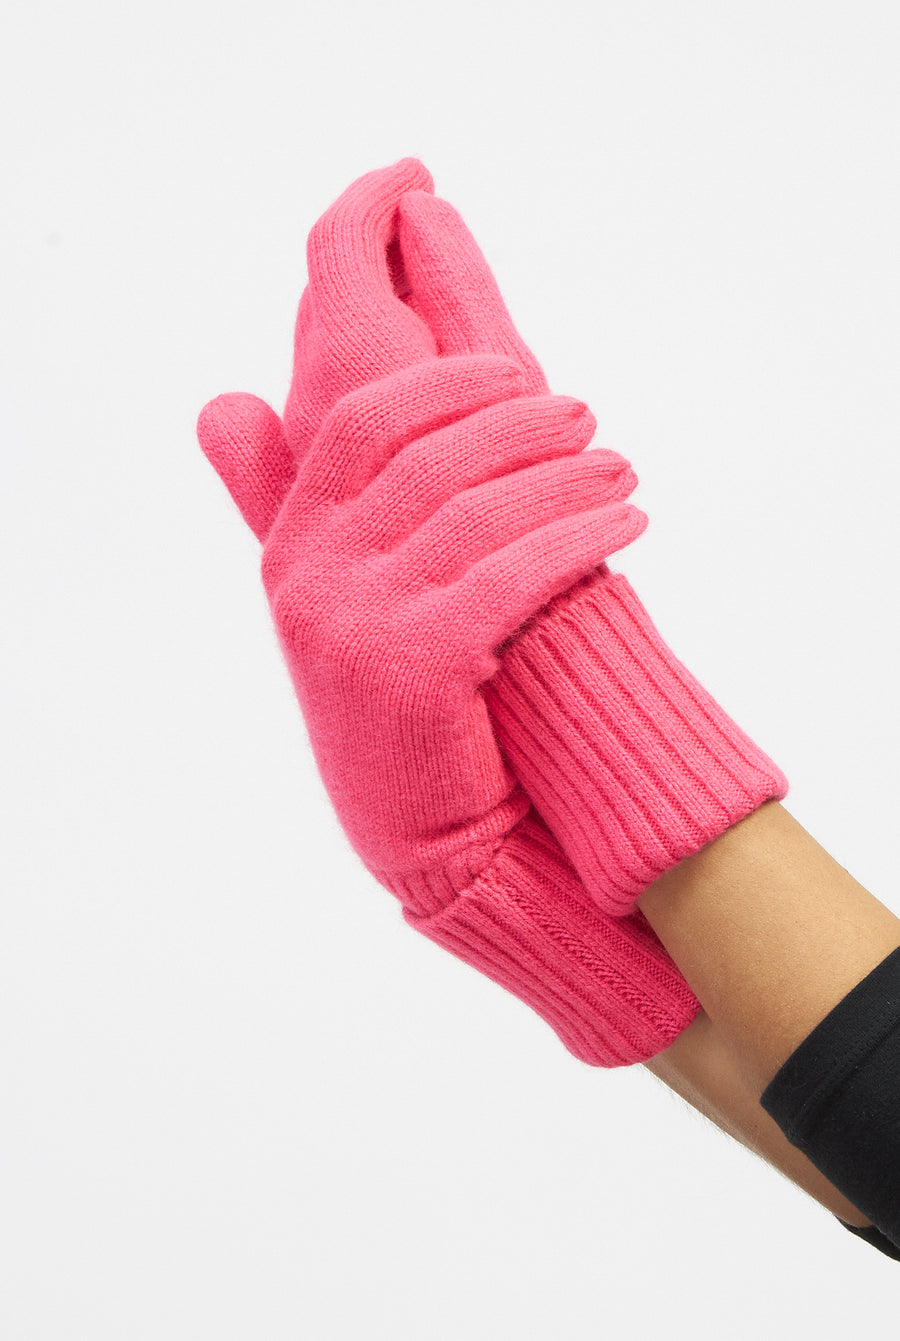 Somerville Scarves Cashmere Gloves